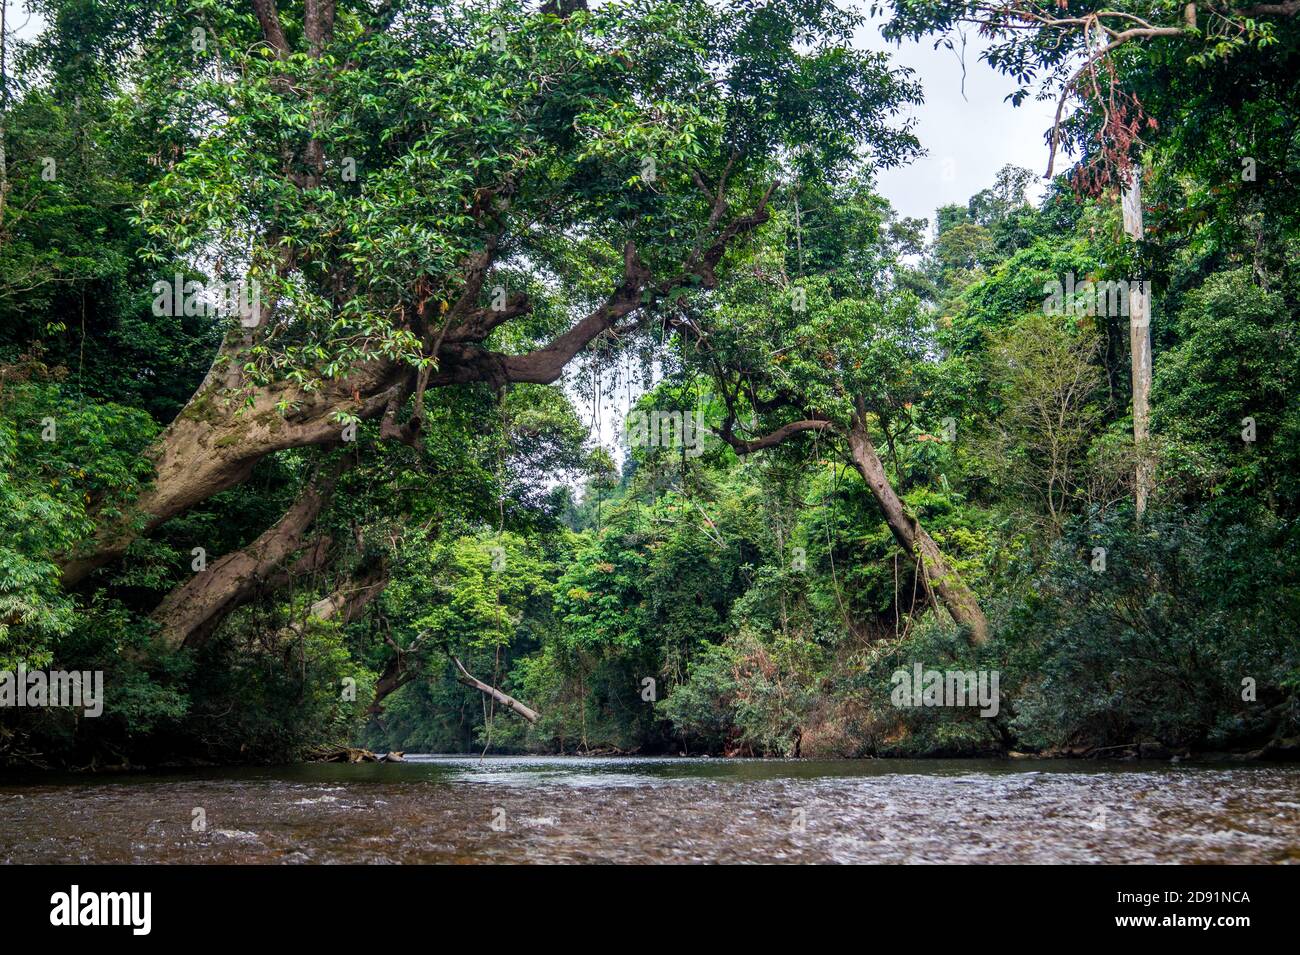 Blick auf den Fluss, der durch grünen Dschungel fließt Stockfoto